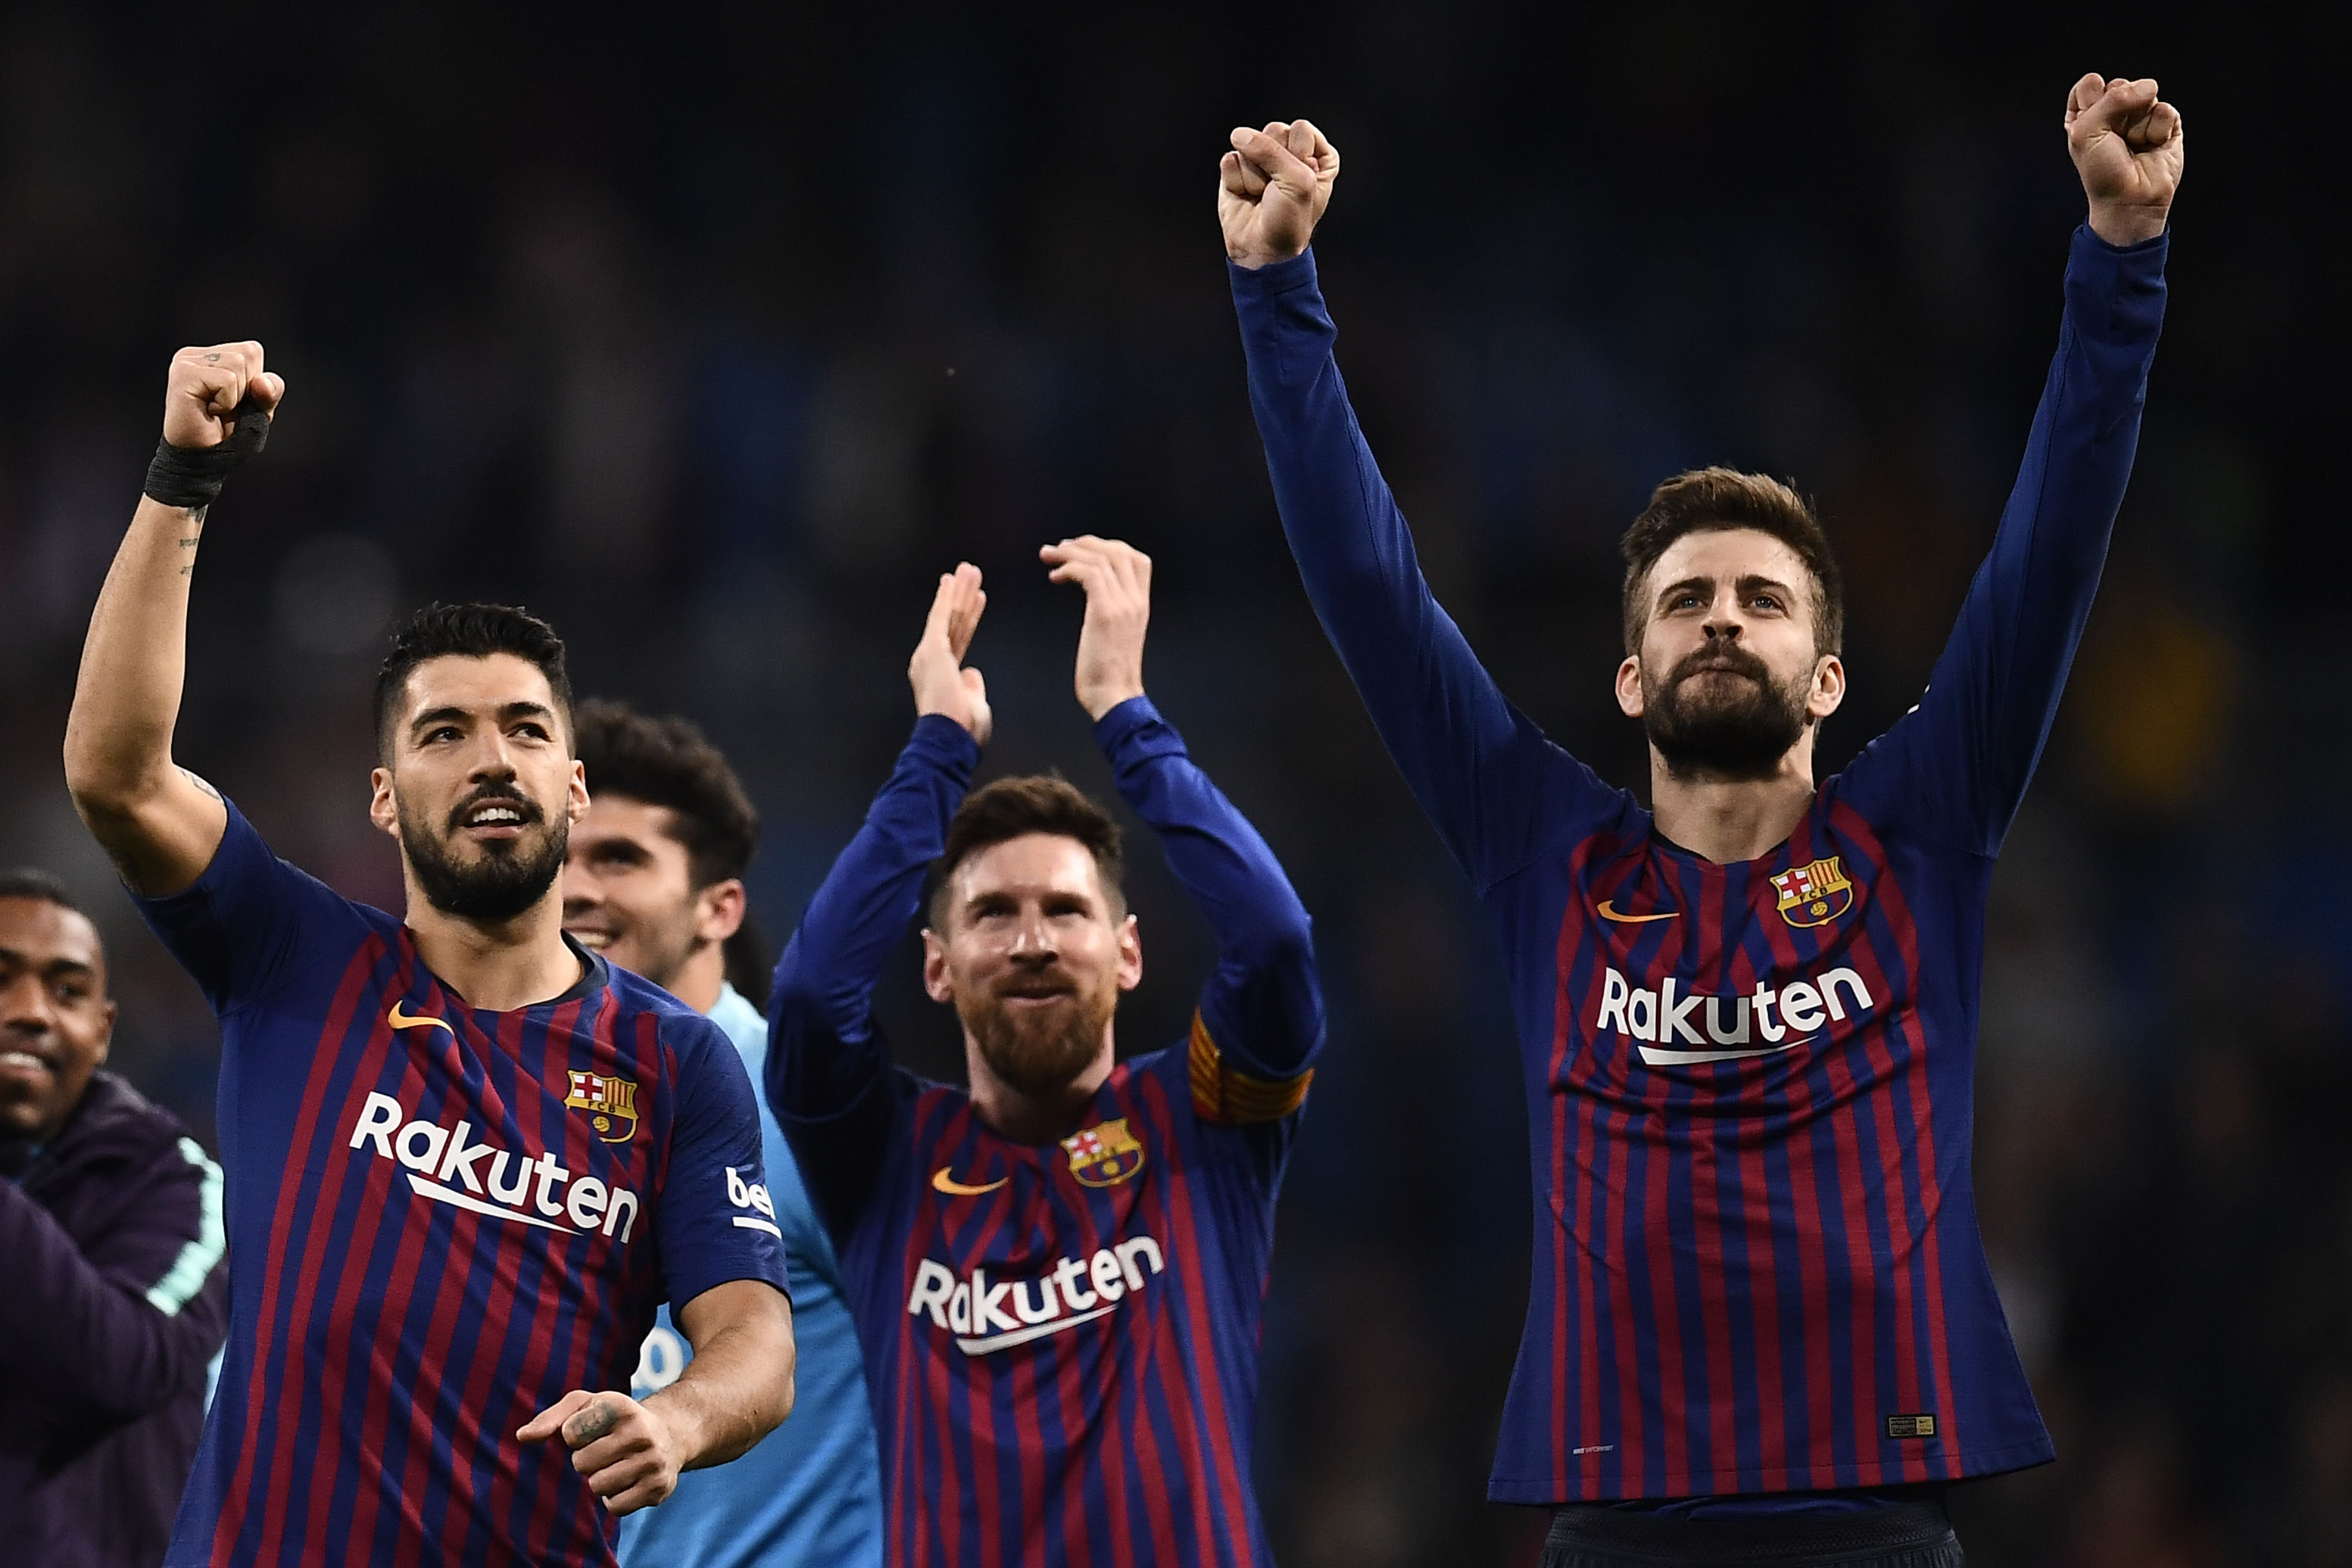 El Barcelona recibirá este sábado al Rayo Vallecano, a las 11.30 horas, donde buscará una nueva victoria. (Foto Prensa Libre: AFP).